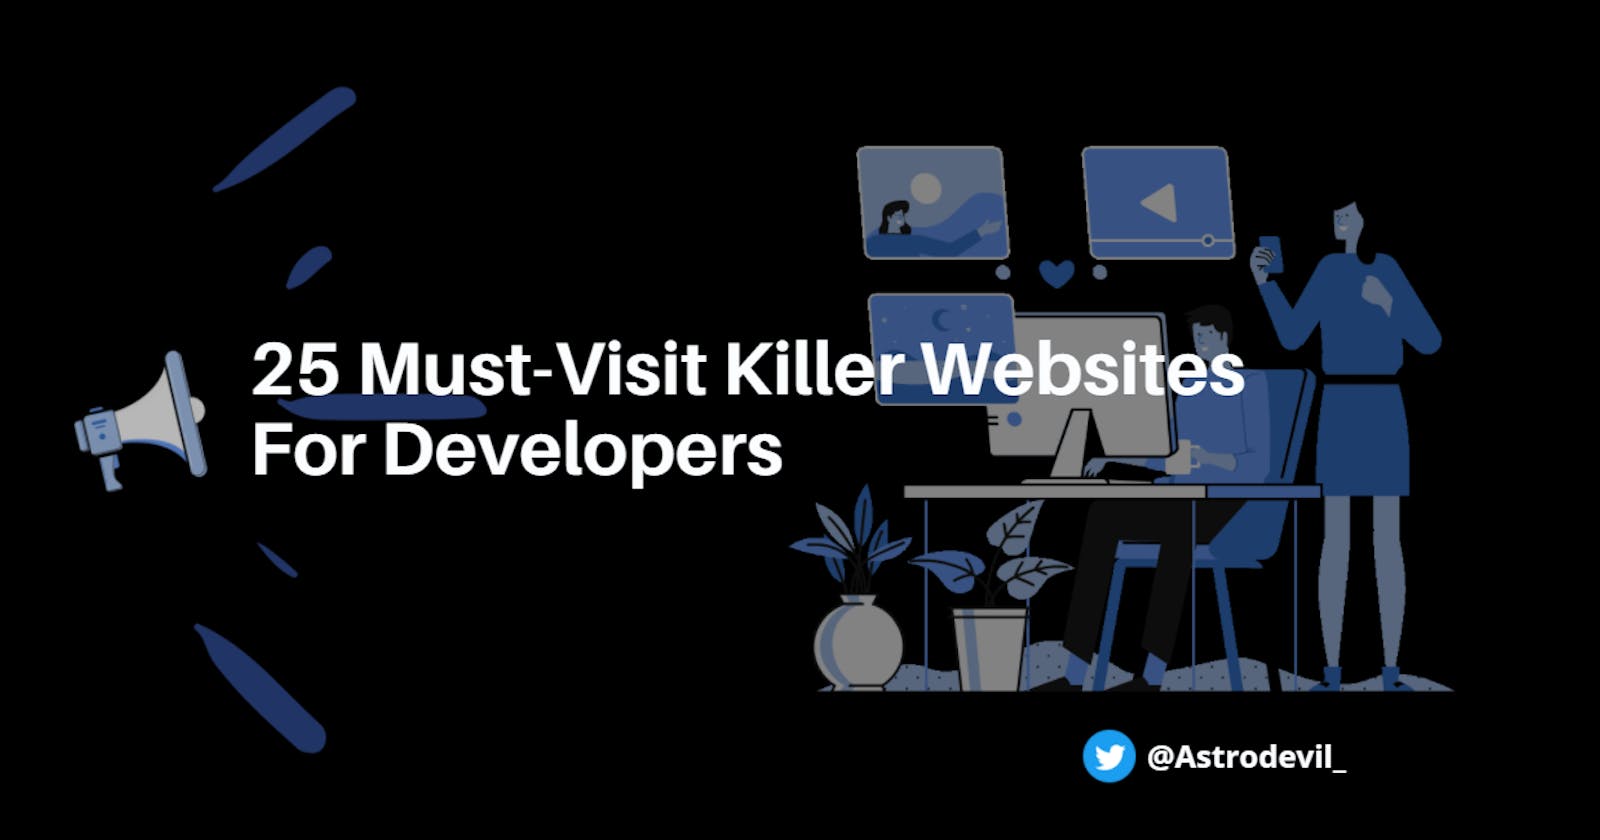 25 Must-Visit Killer Websites For Developers